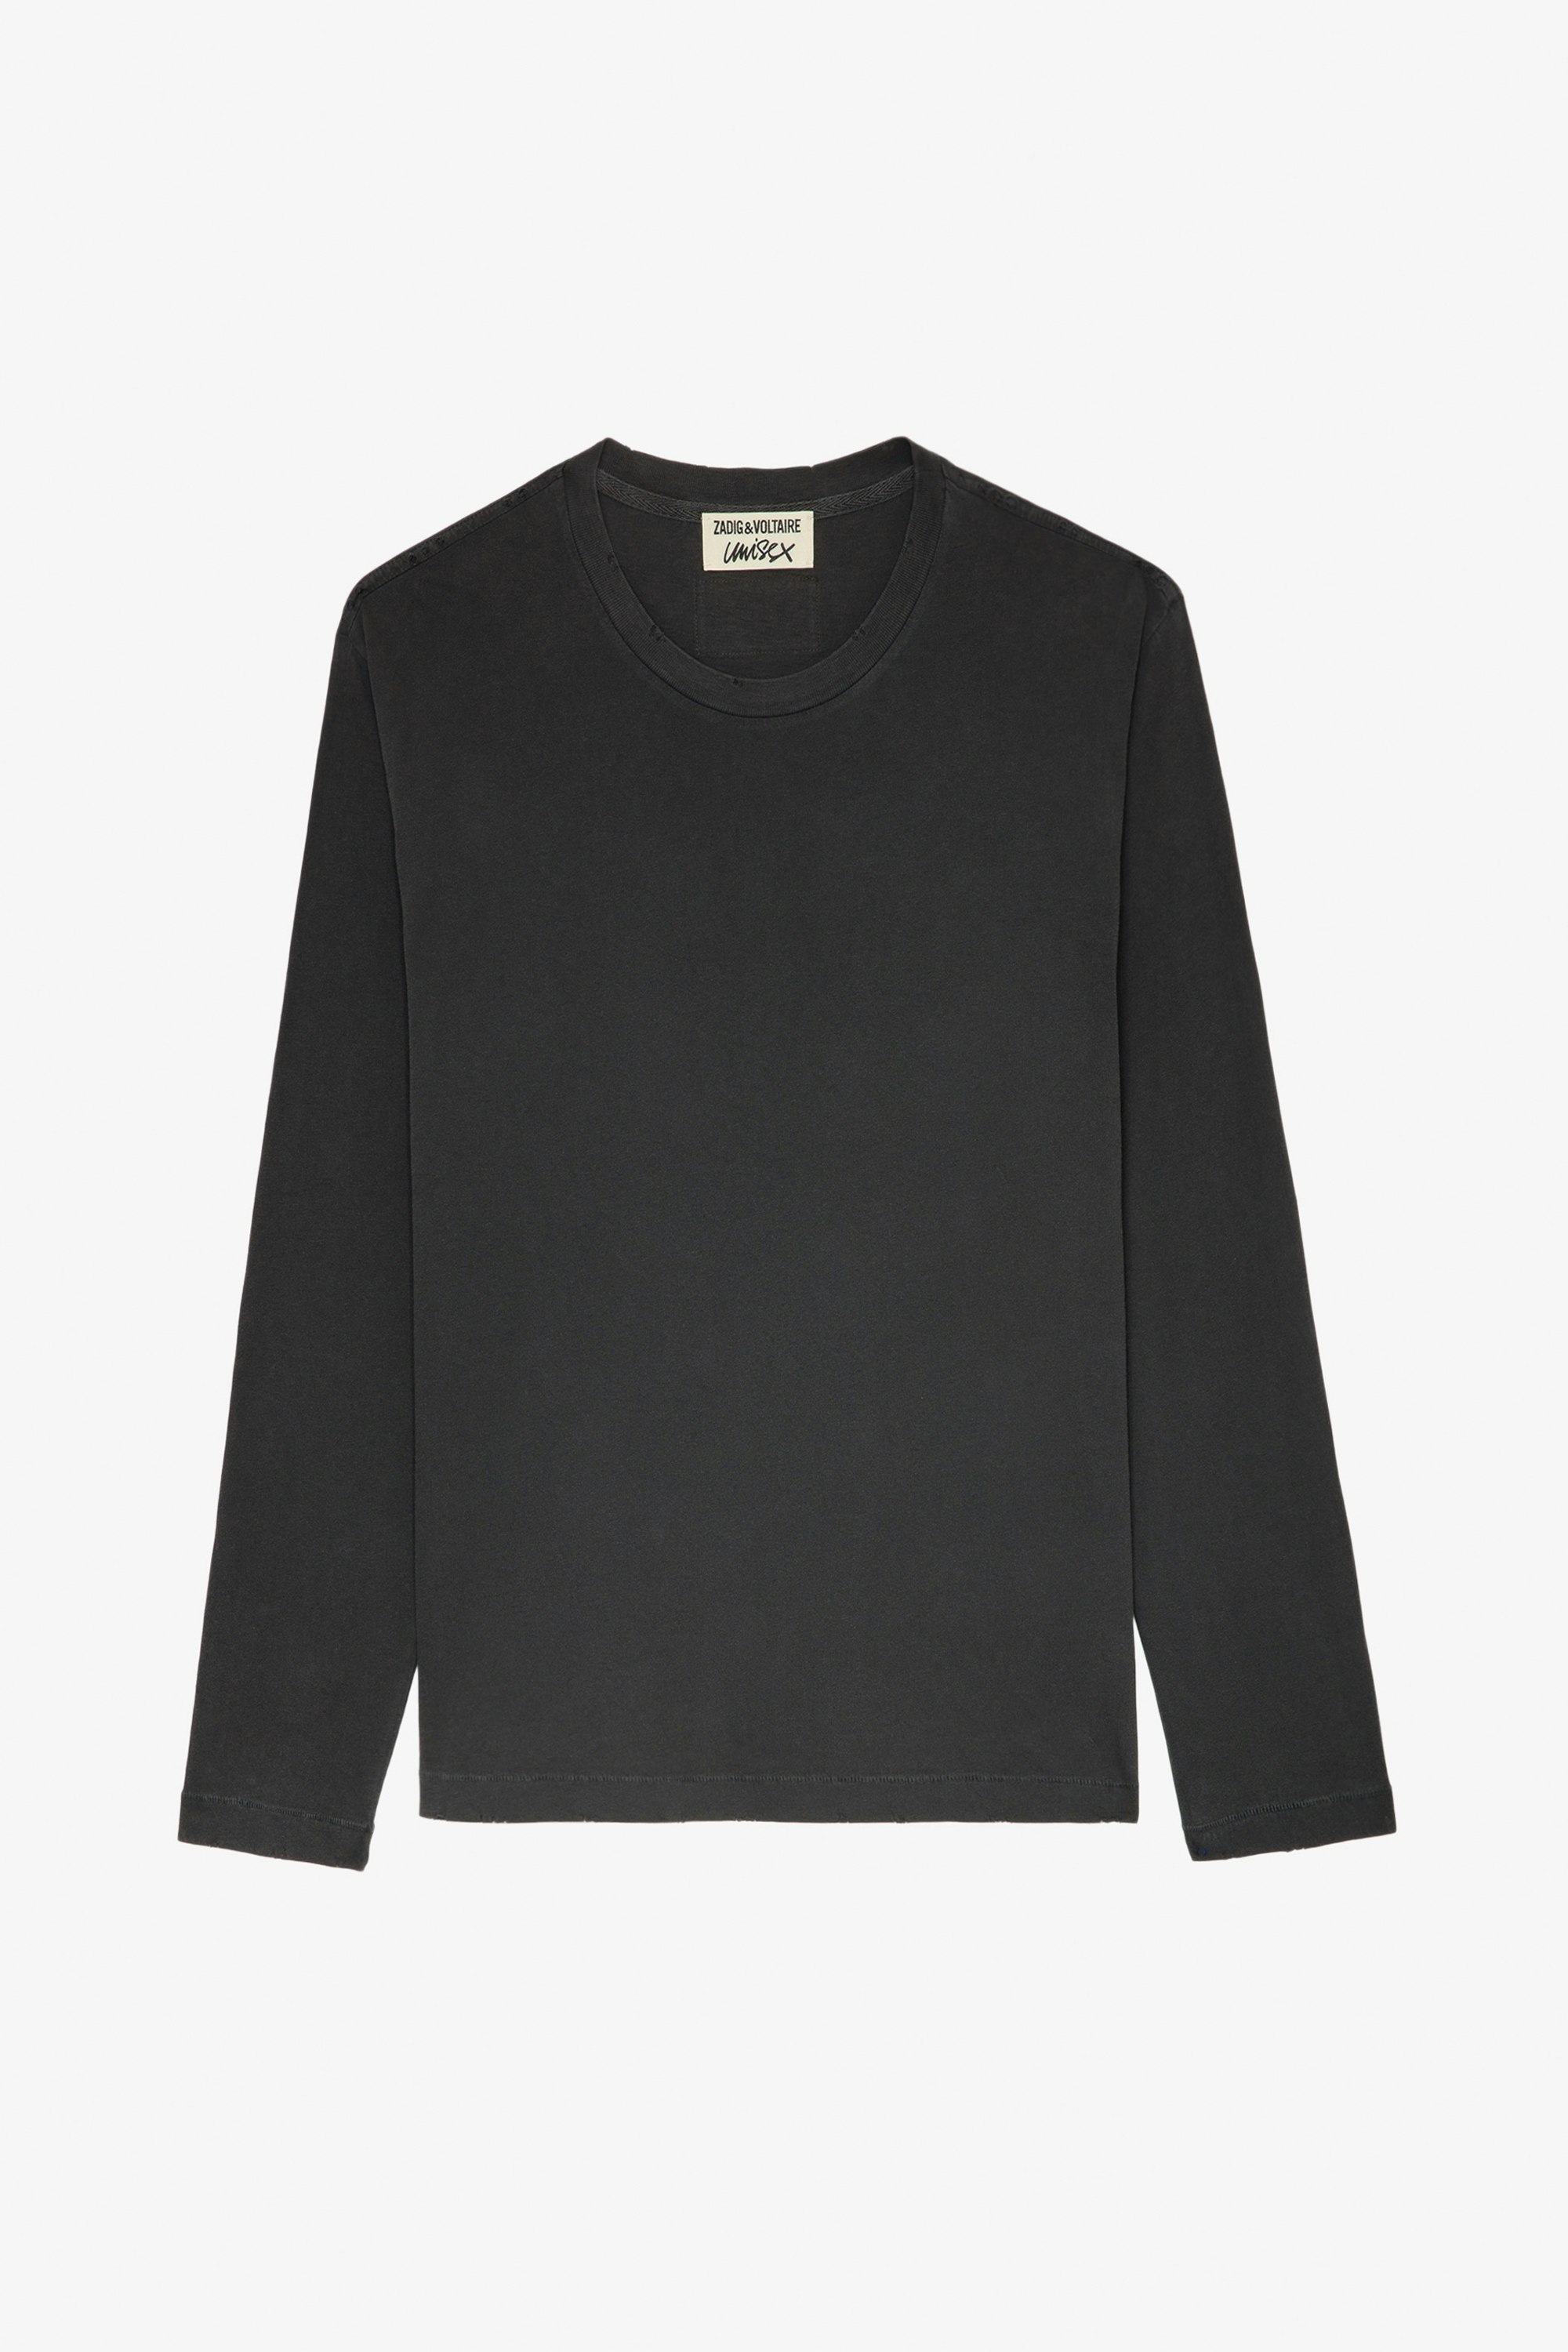 Camiseta Ellon - Camiseta unisex de algodón en gris oscuro de manga larga con insignia de blasón del estudio en la espalda.